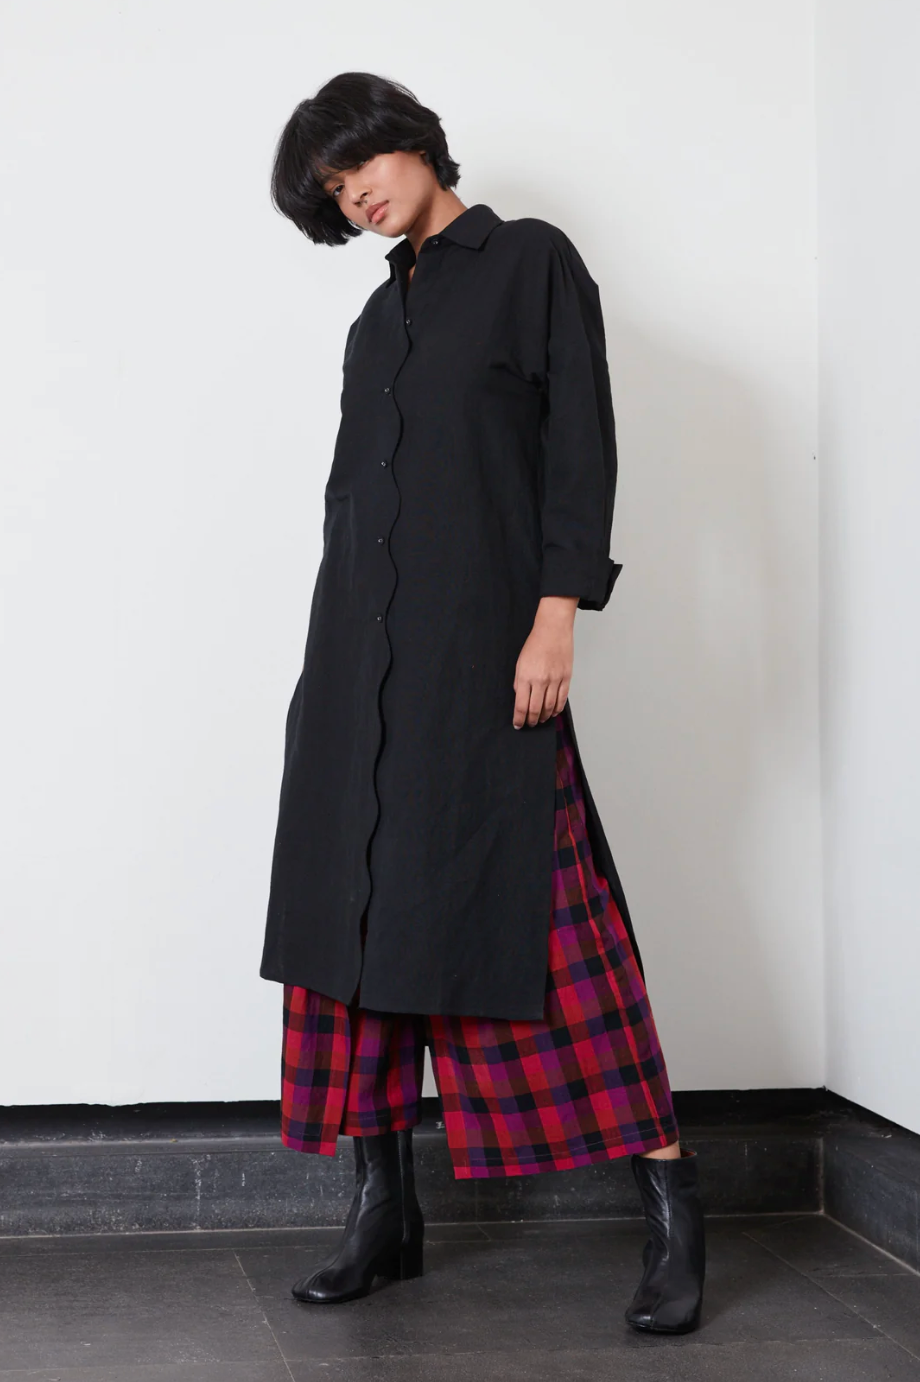 Sam Shirt in Black | Rujuta Sheth